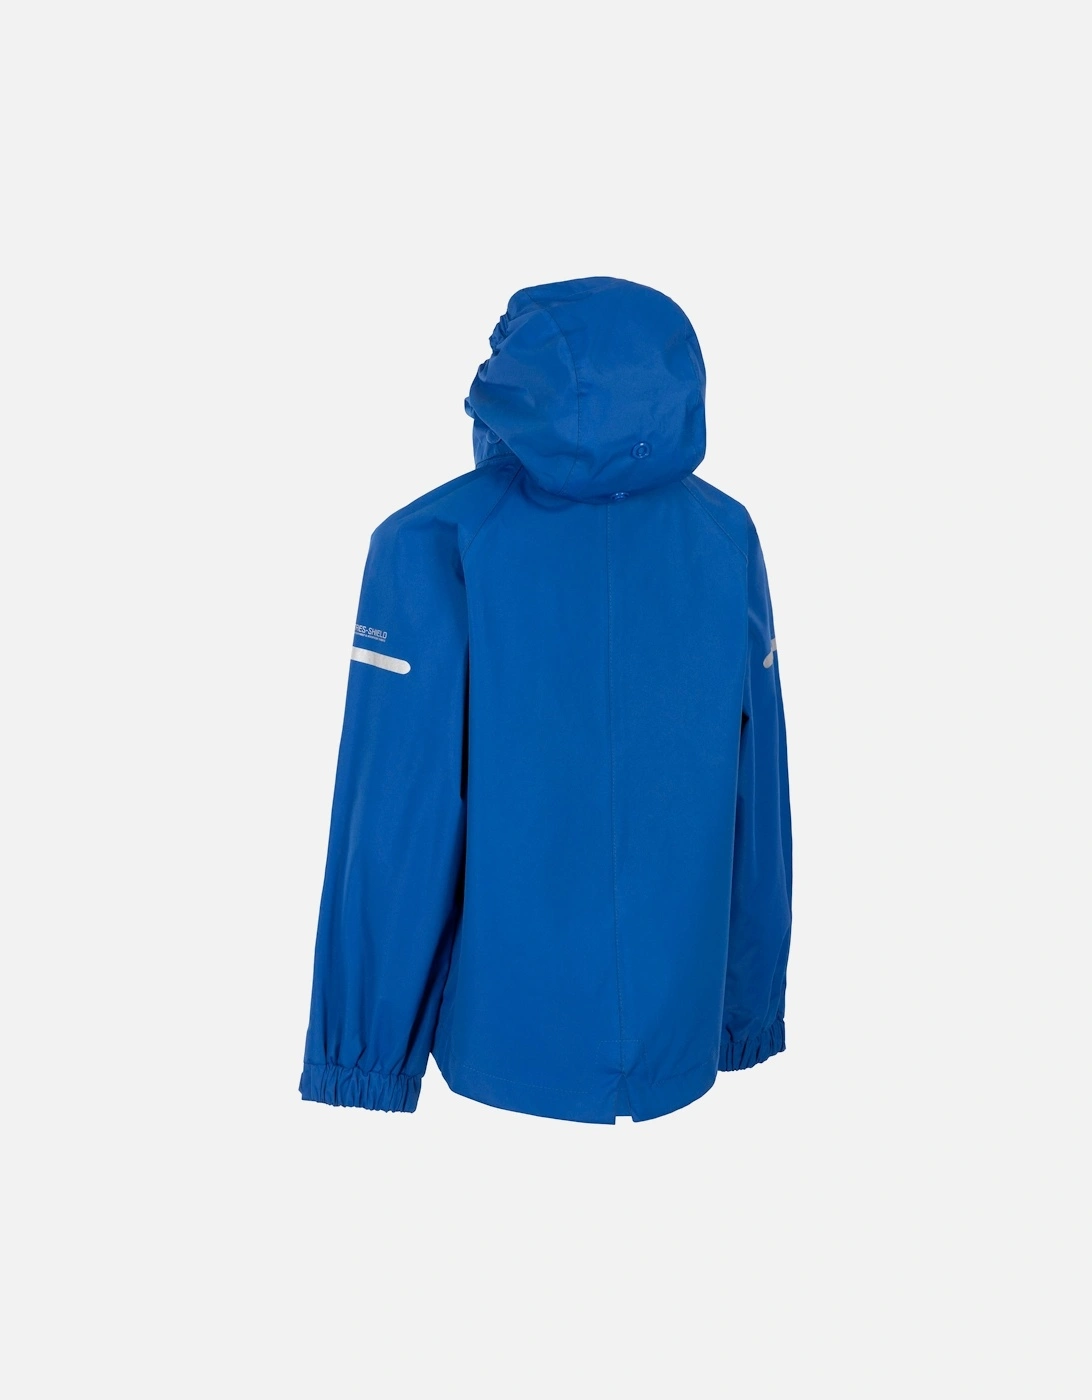 Childrens/Kids Bluster Waterproof Jacket